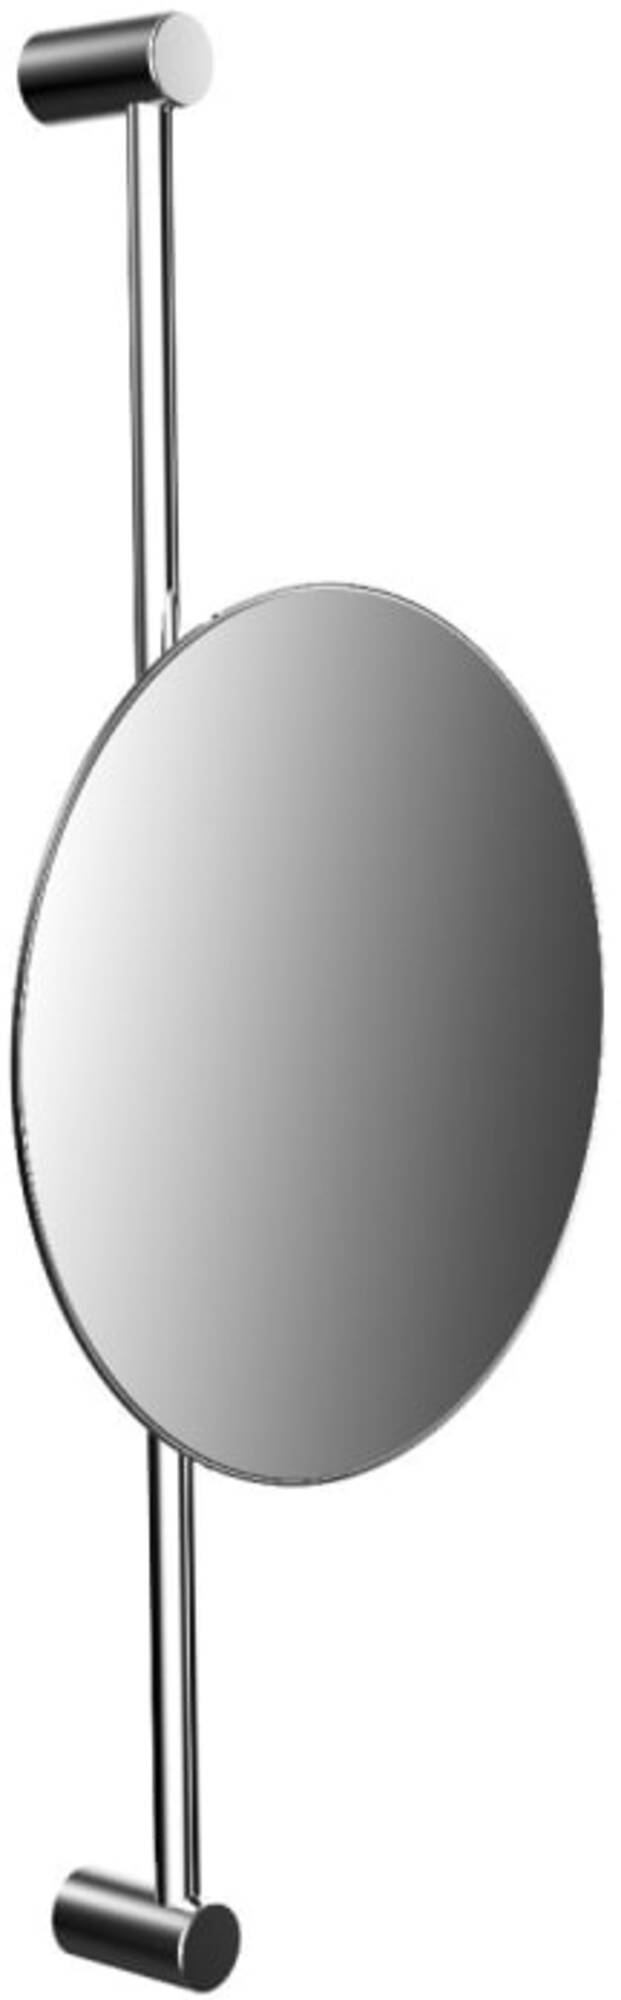 Emco Scheerspiegel 20 2x8 4x46 cm Chroom